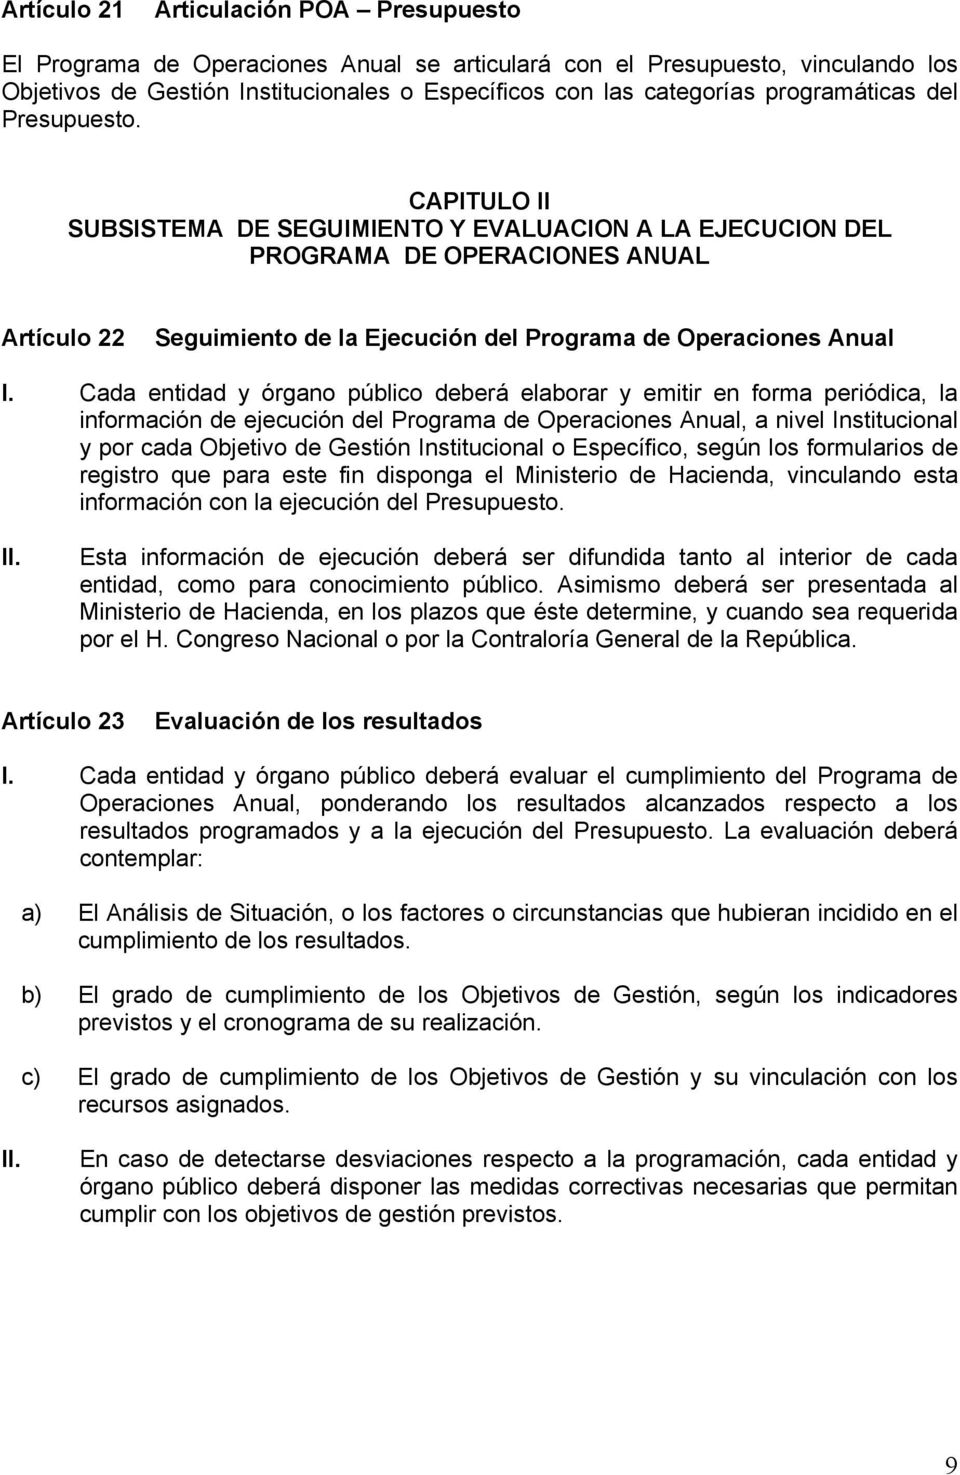 CAPITULO II SUBSISTEMA DE SEGUIMIENTO Y EVALUACION A LA EJECUCION DEL PROGRAMA DE OPERACIONES ANUAL Artículo 22 Seguimiento de la Ejecución del Programa de Operaciones Anual I.